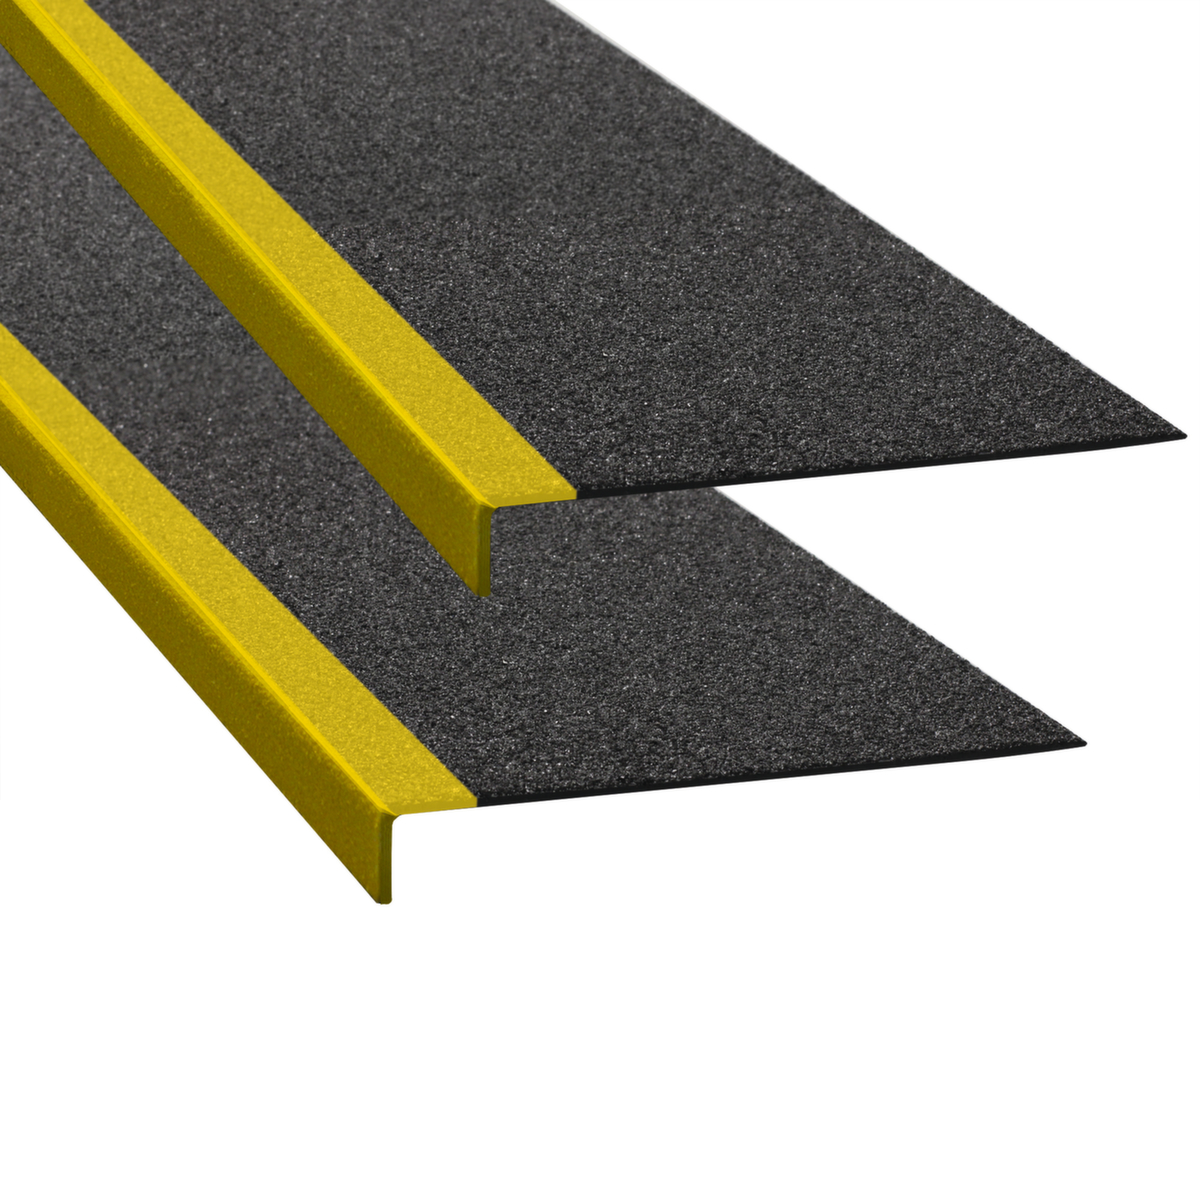 Moravia Angle antidérapant pour escaliers, jaune/noir